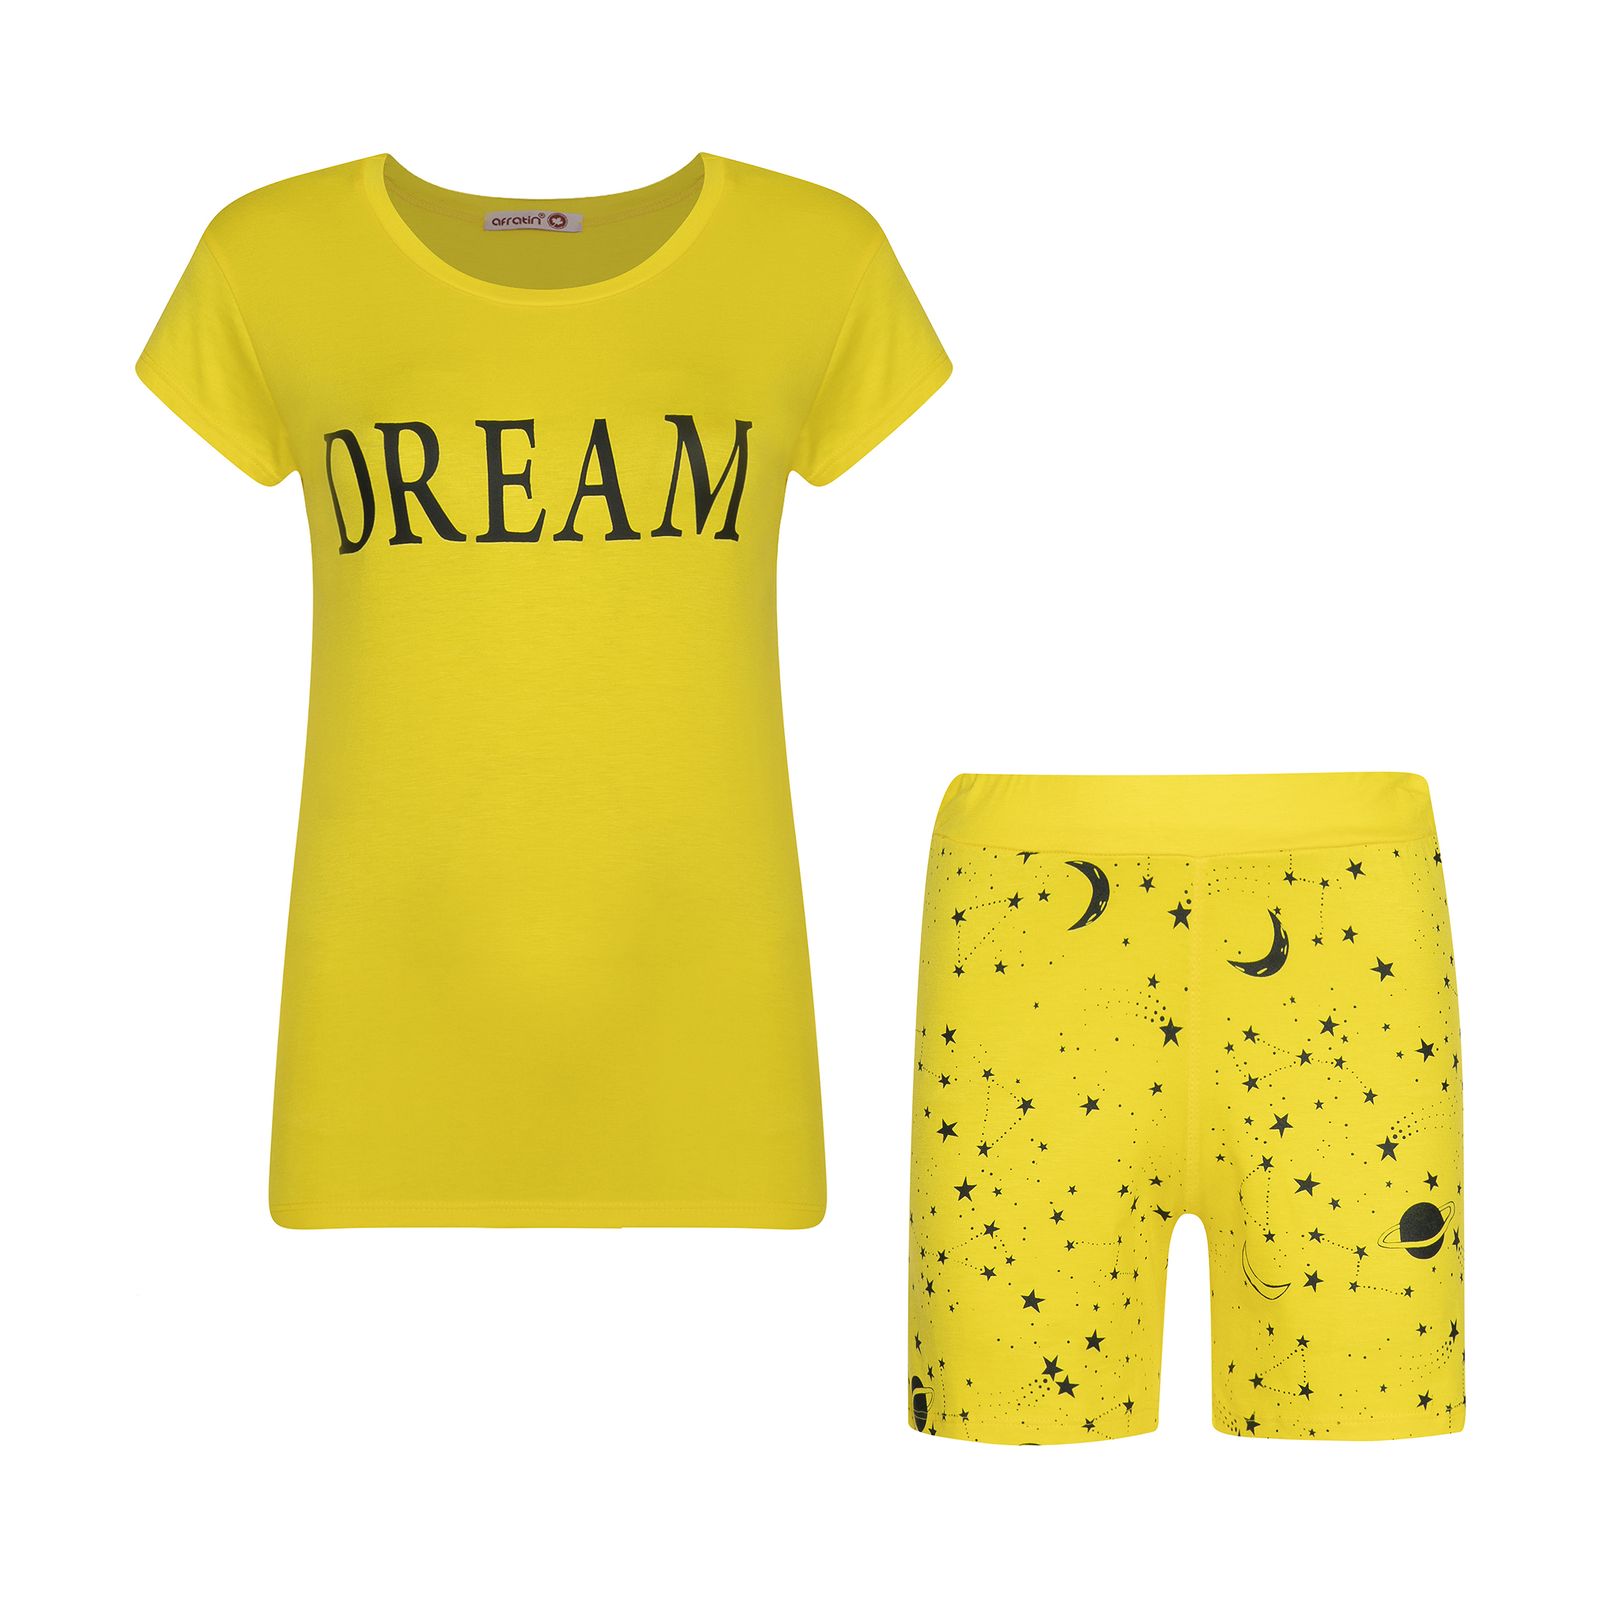 ست تی شرت و شلوارک زنانه افراتین مدل Dream کد 6558 رنگ زرد -  - 1